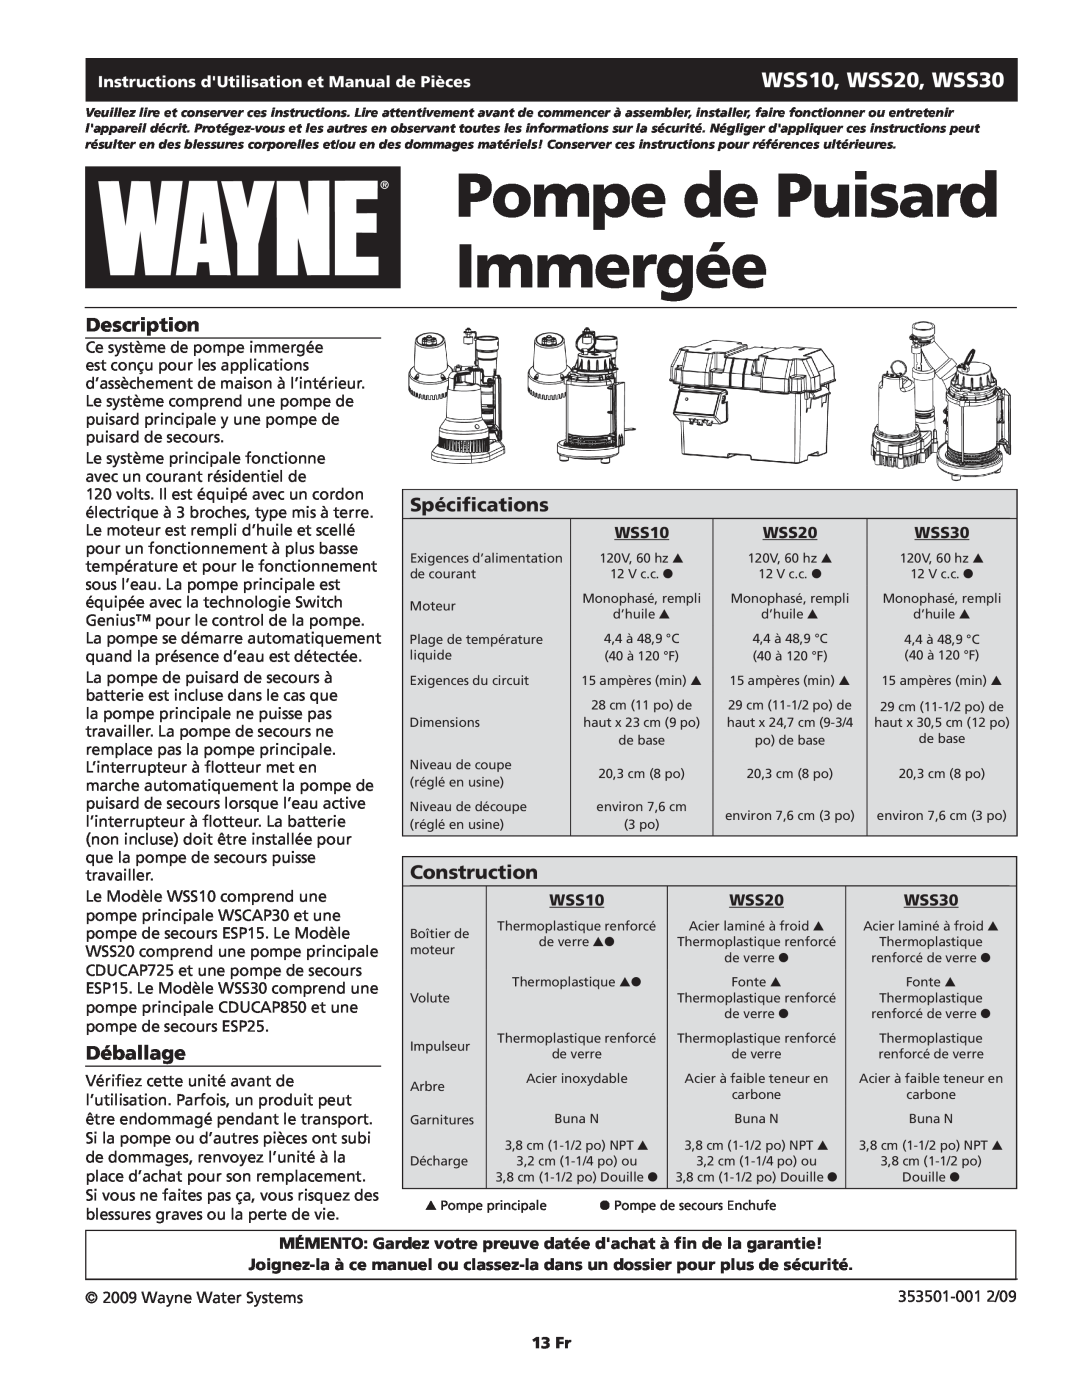 Wayne WSS20 Pompe de Puisard Immergée, Spécifications, Déballage, Instructions dUtilisation et Manual de Pièces, 13 Fr 